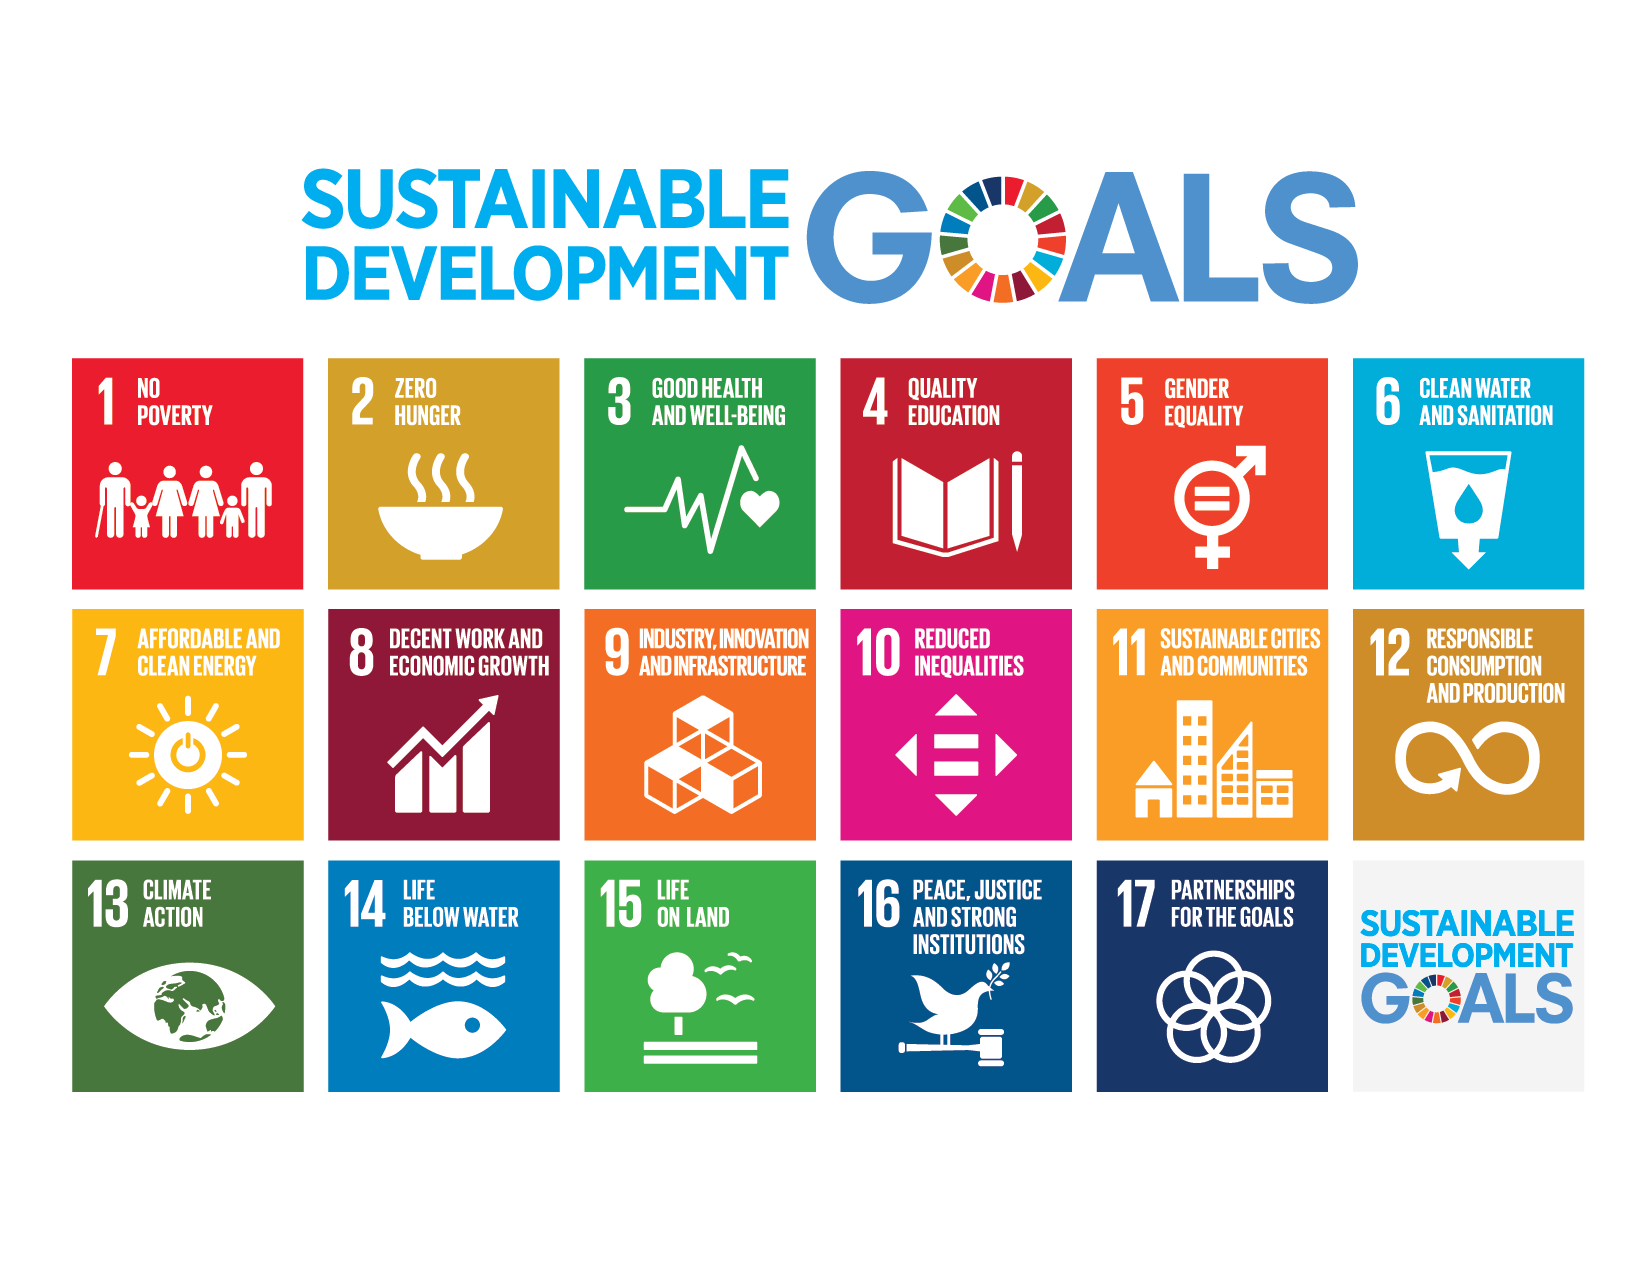 Development Goals